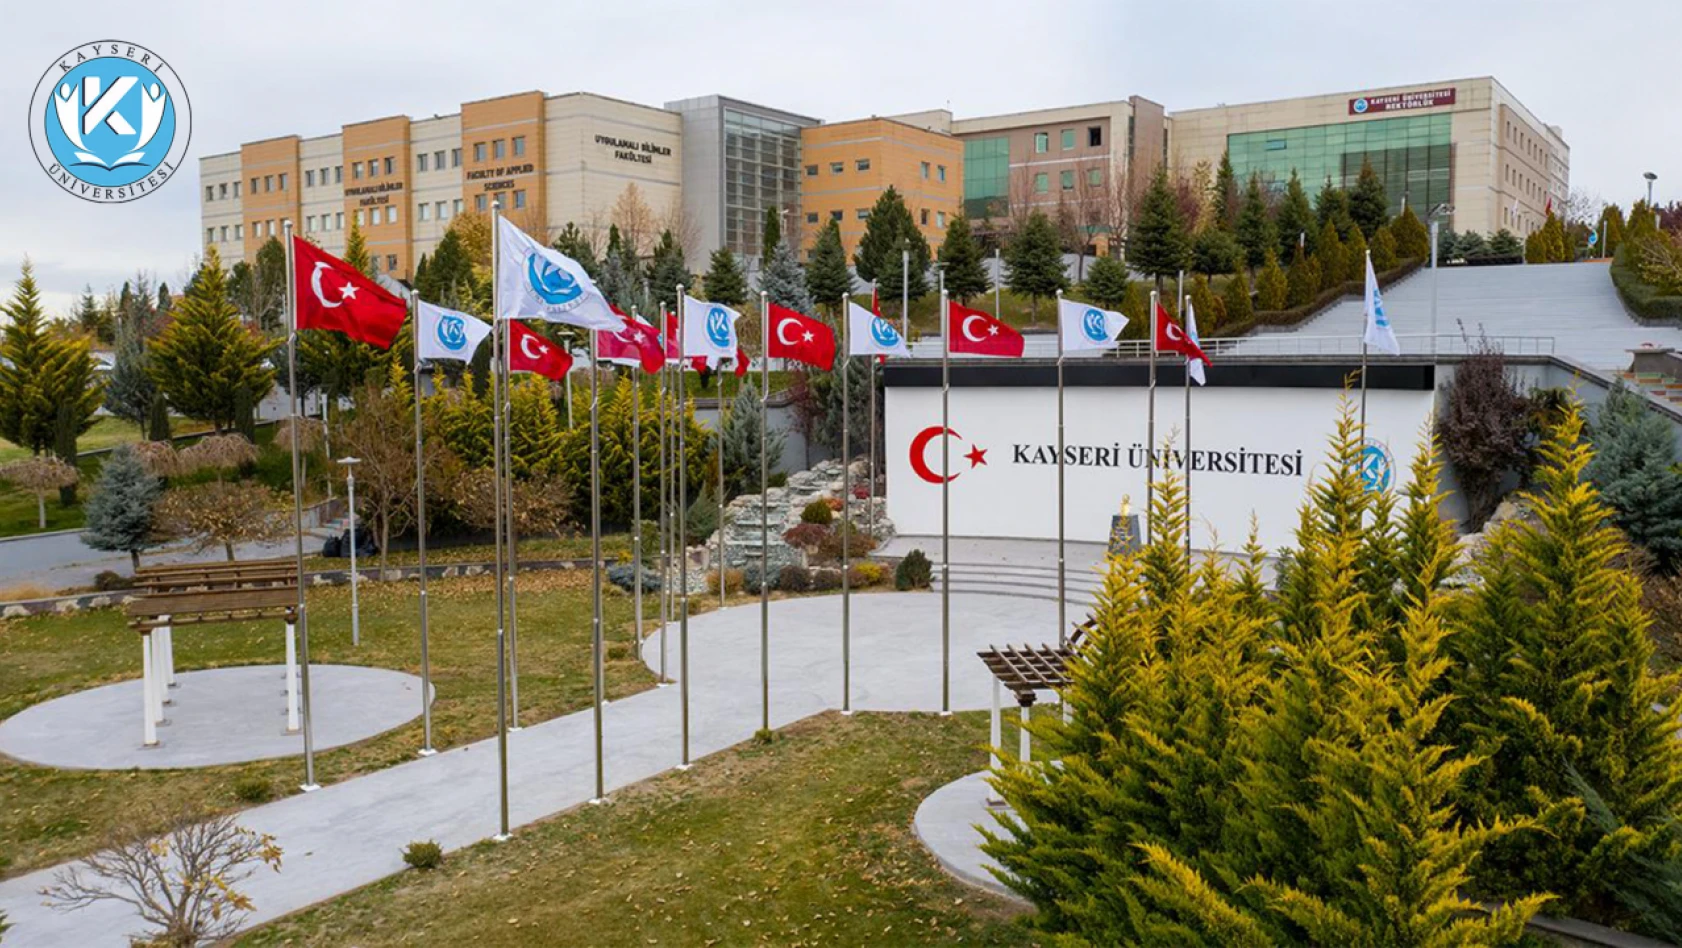 Dikkat: Kayseri'de yeni fakülteye öğretim elemanı alınacak!